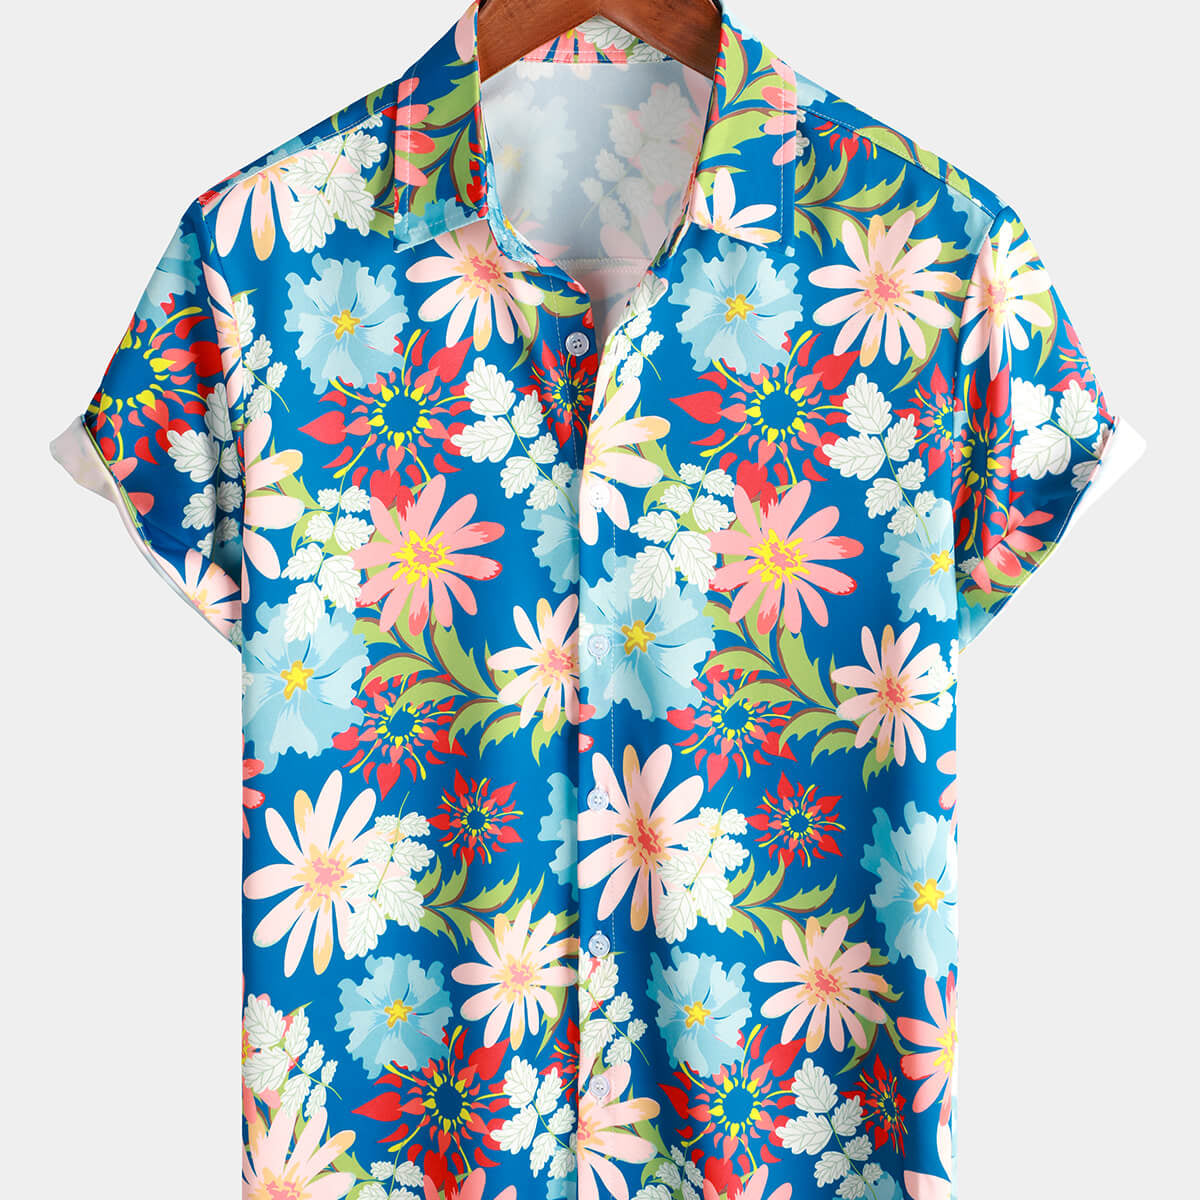 Camisa hawaiana de verano de playa de manga corta con botones azul tropical floral para hombre